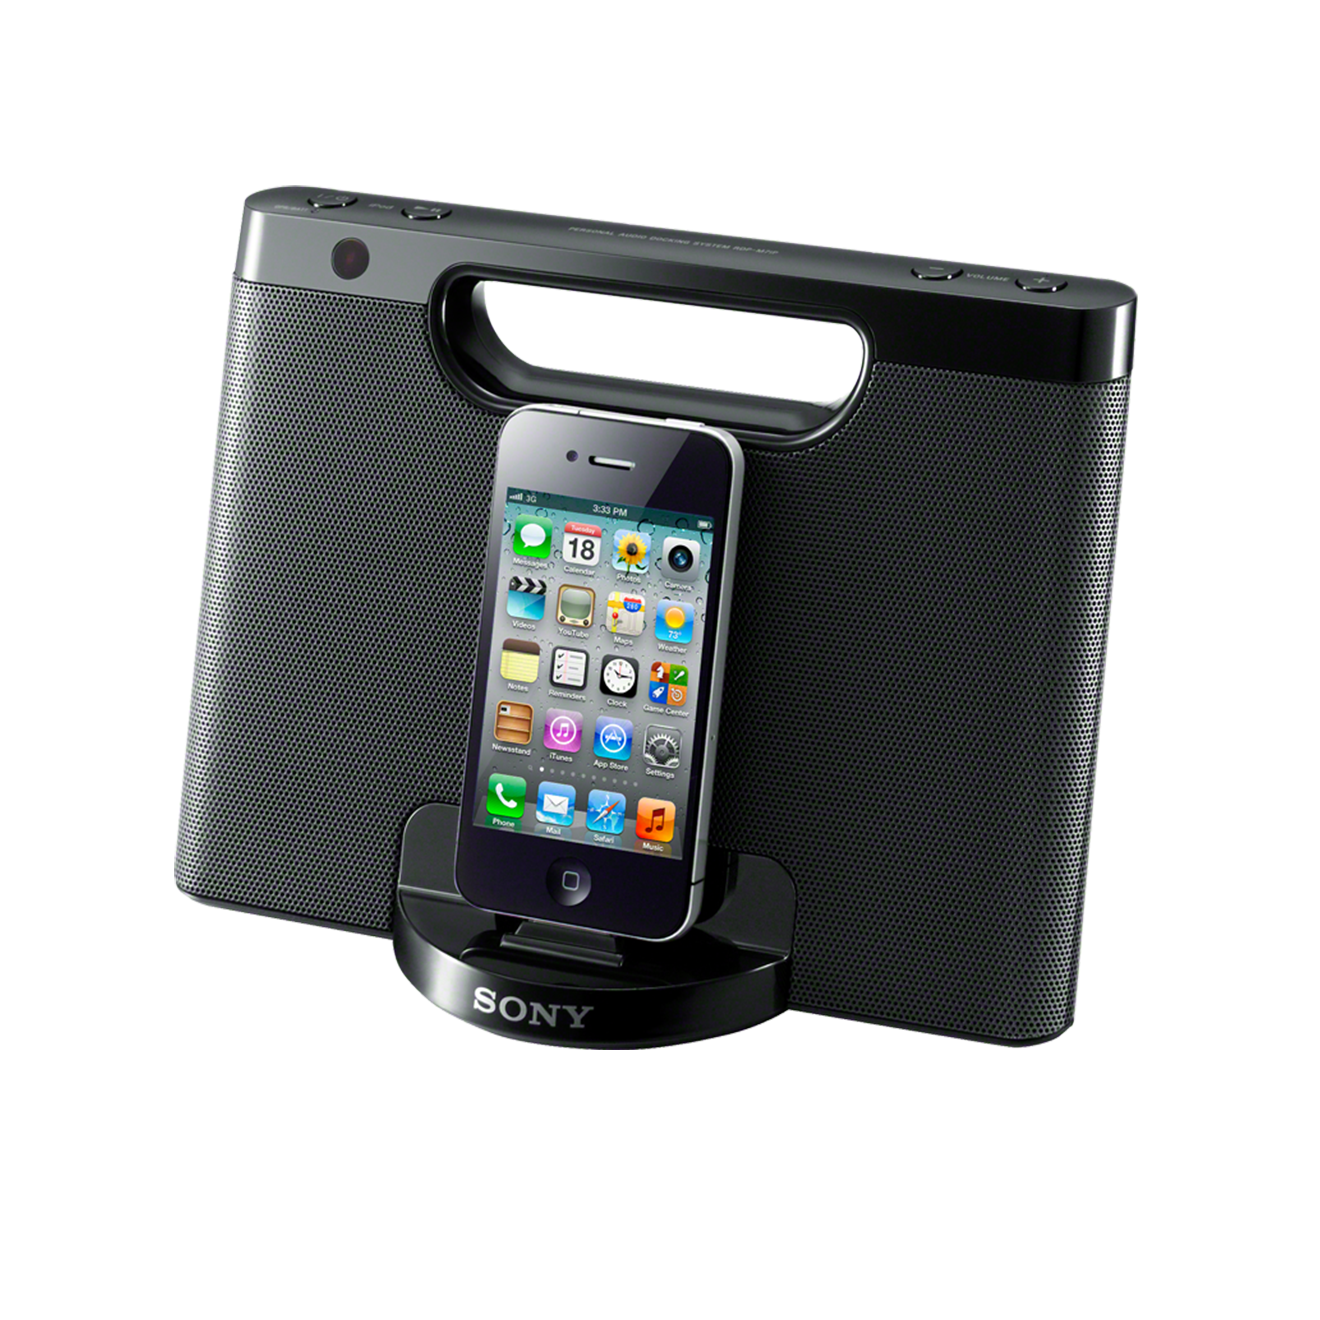 Draagbare speakerdock voor iPhone/iPod 